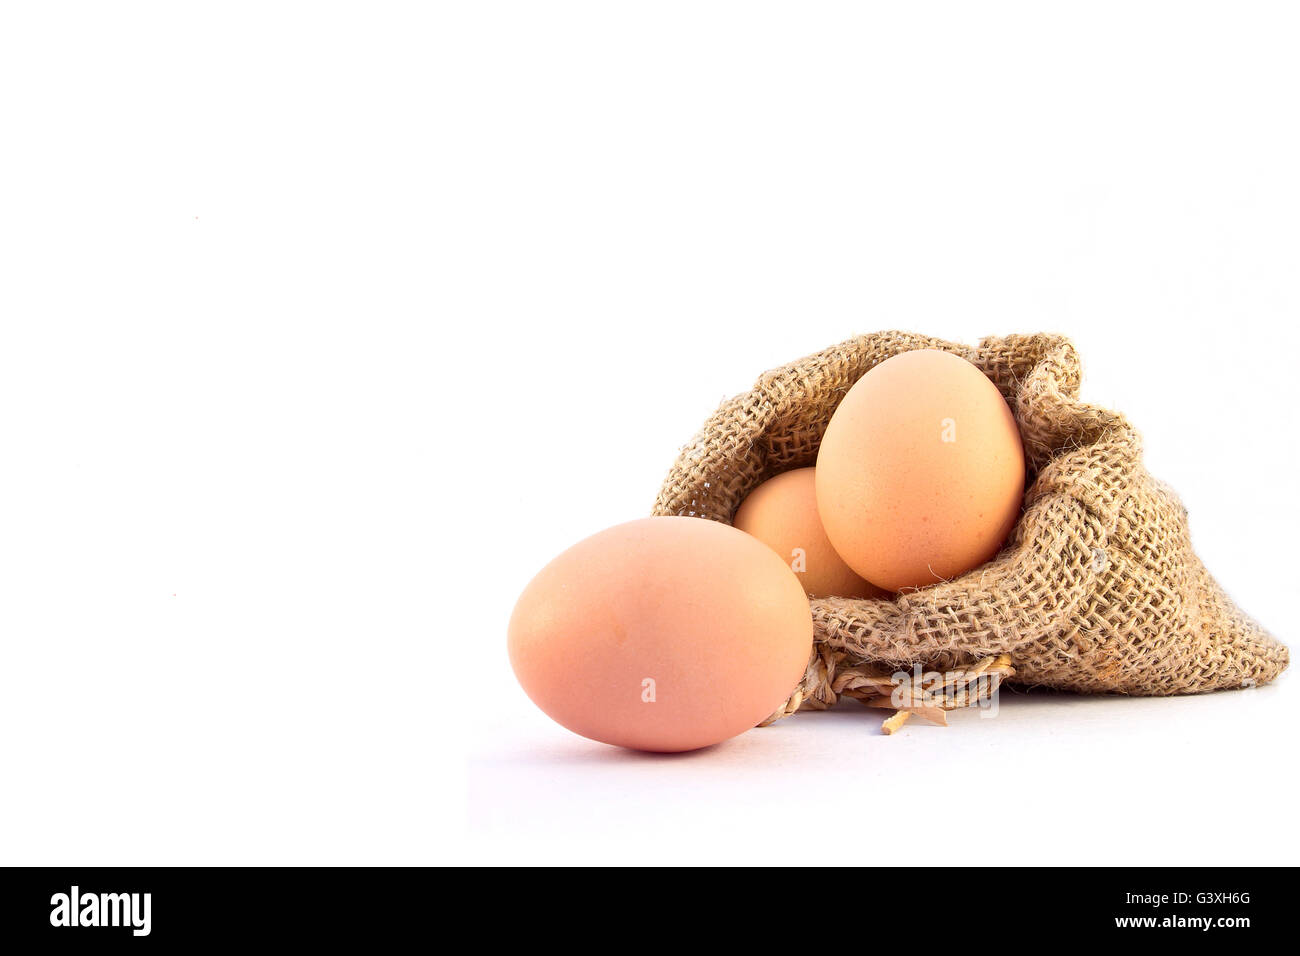 Uova di colore marrone nel sacco di tela isolata su uno sfondo bianco Foto Stock